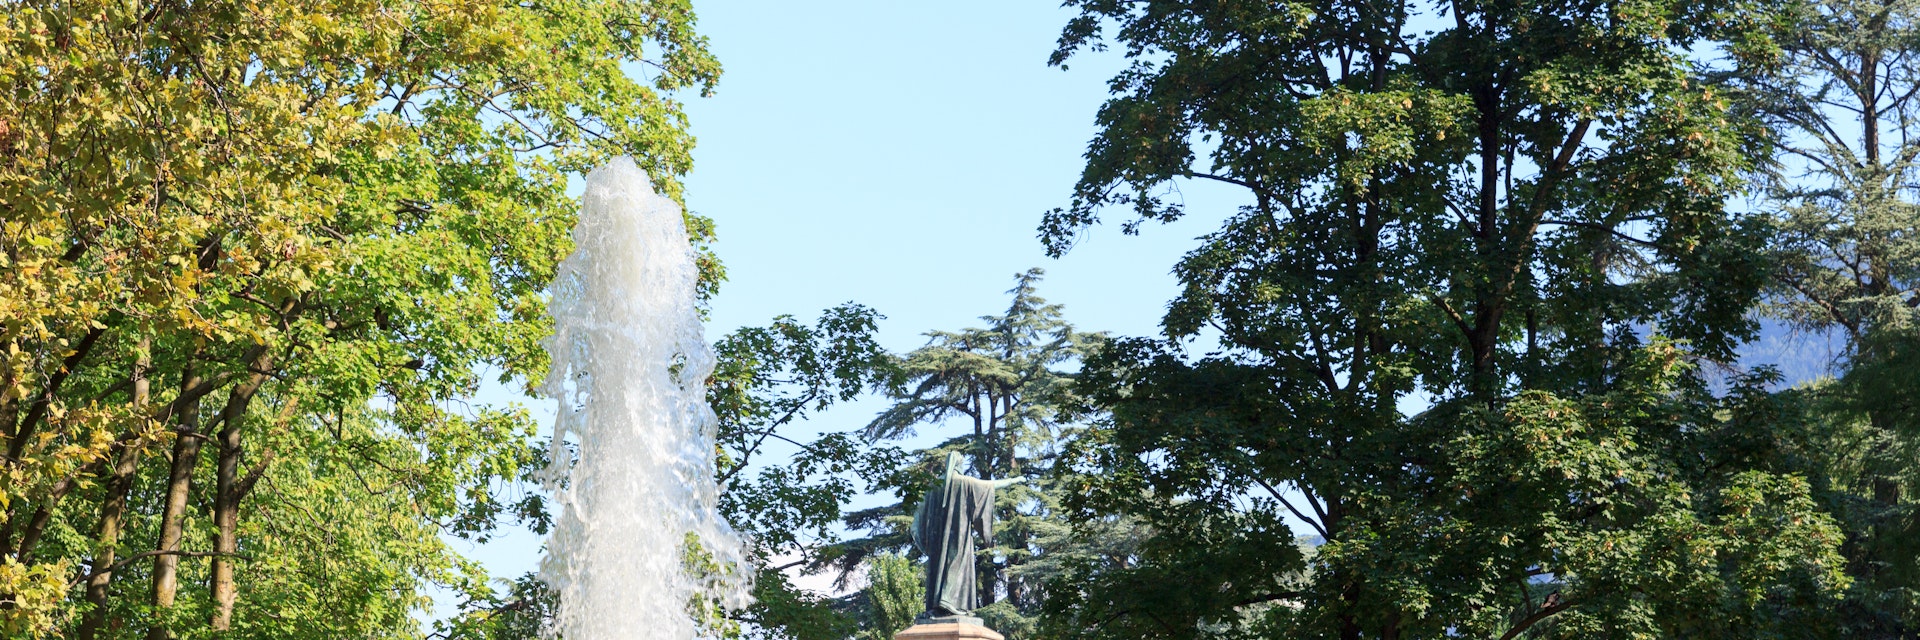 Fountain and monument statue of Dante Alighieri in park Giardini Pubblici in Trento, Italy